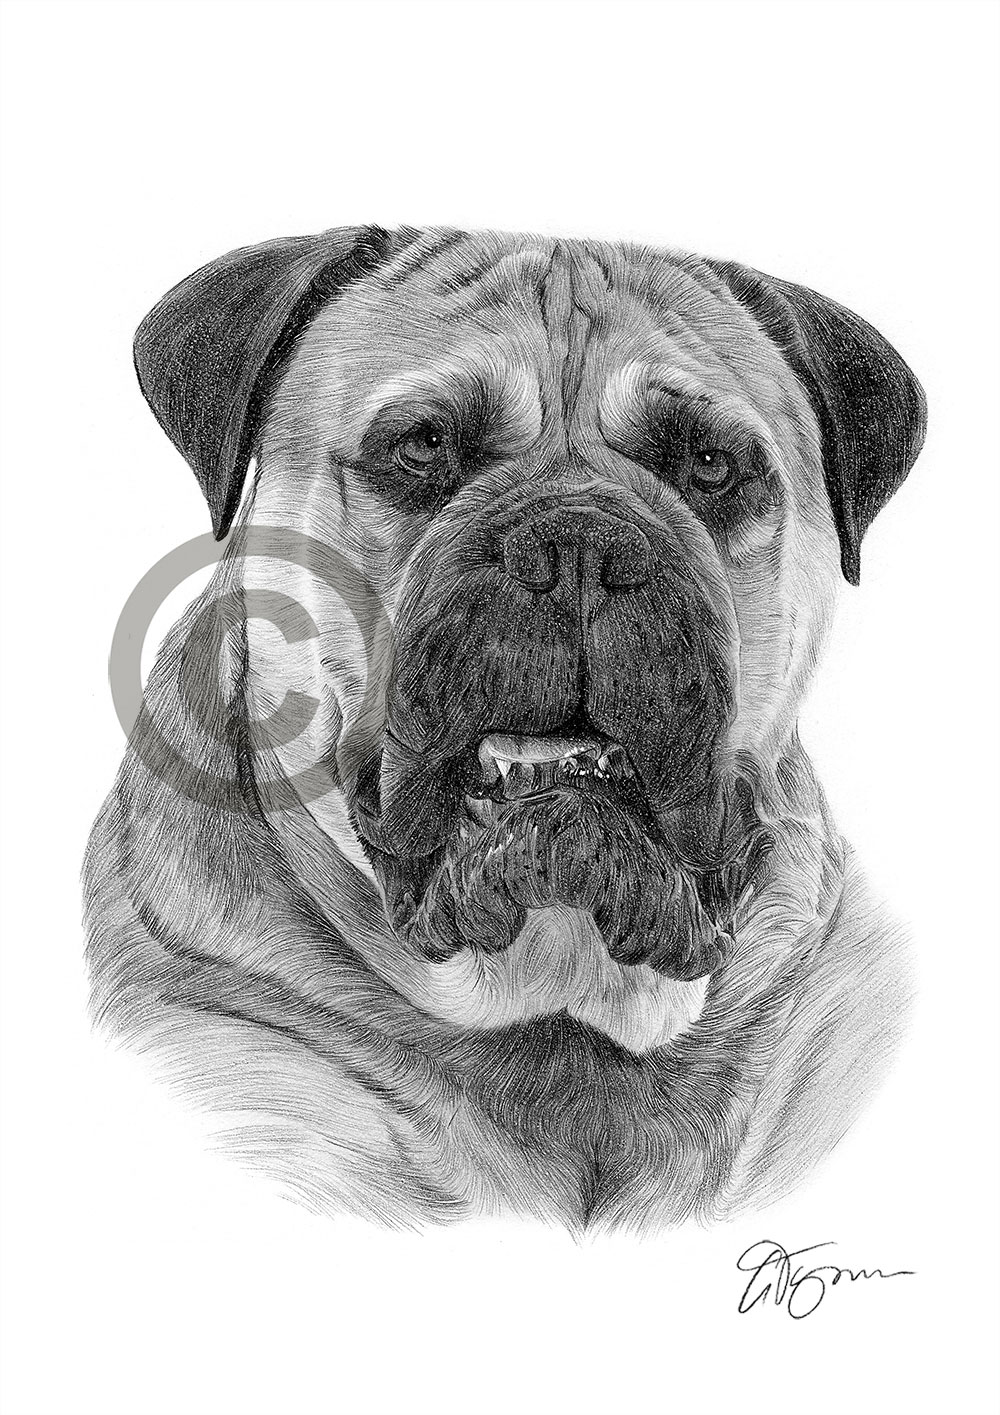 Pencil drawing of a Bullmastiff by artist Gary Tymon